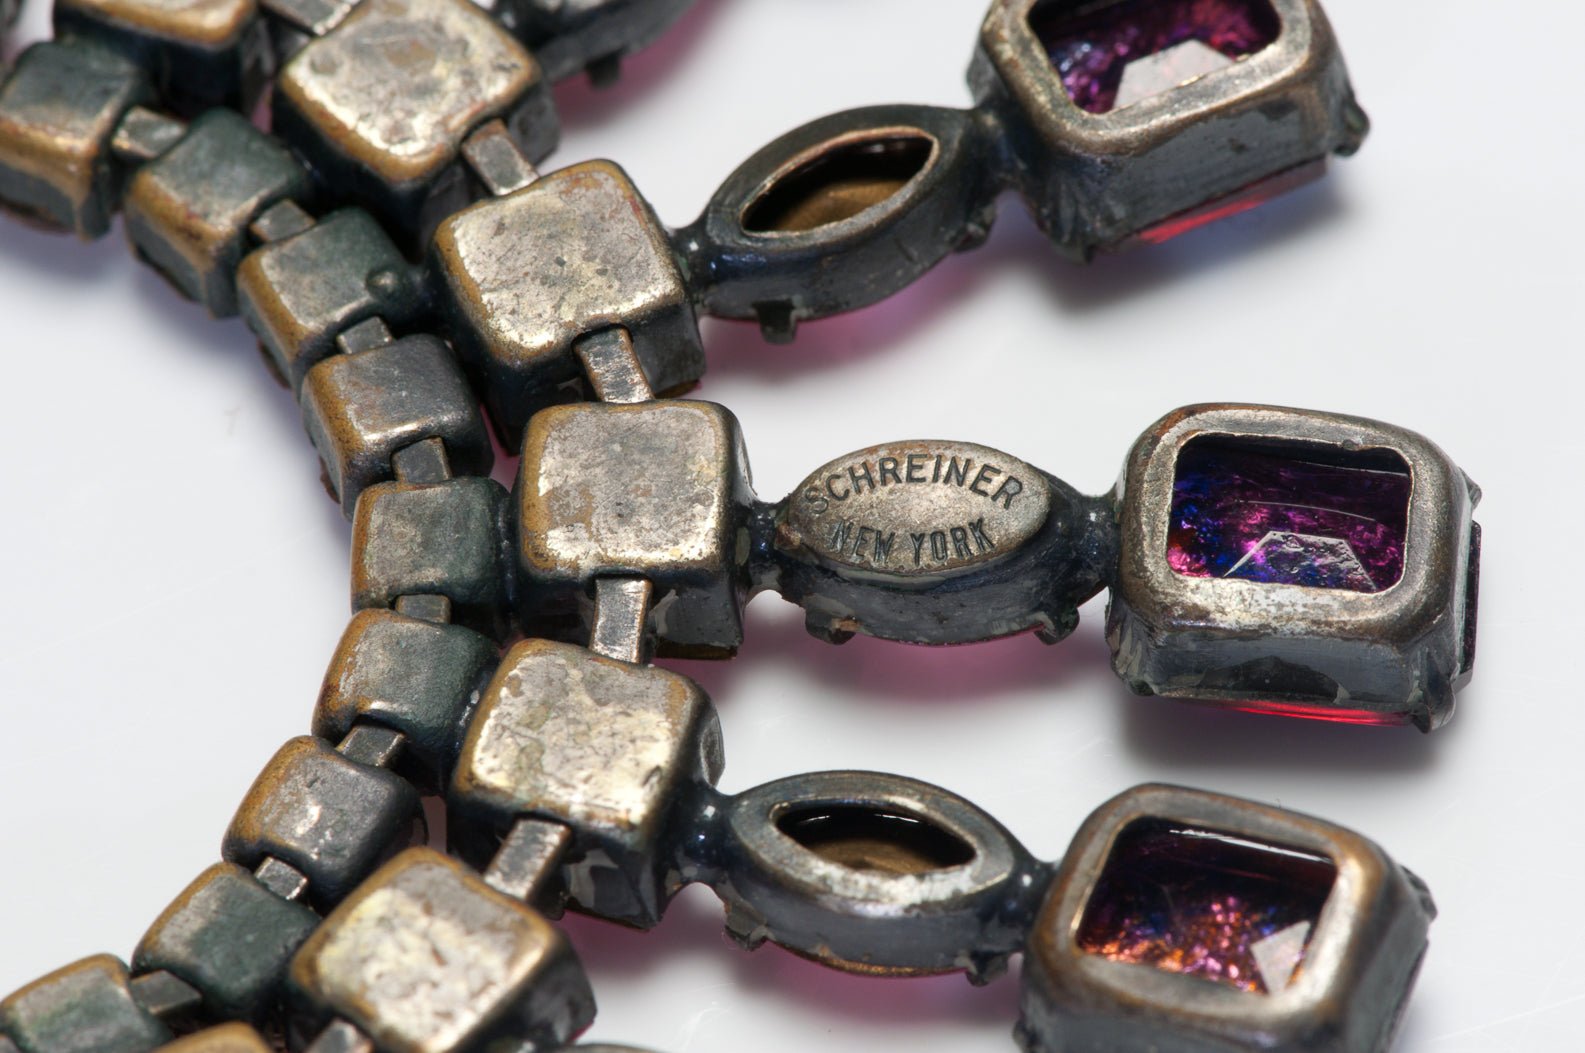 Schreiner New York 1950’s Pink Purple Crystal Glass Collar Necklace